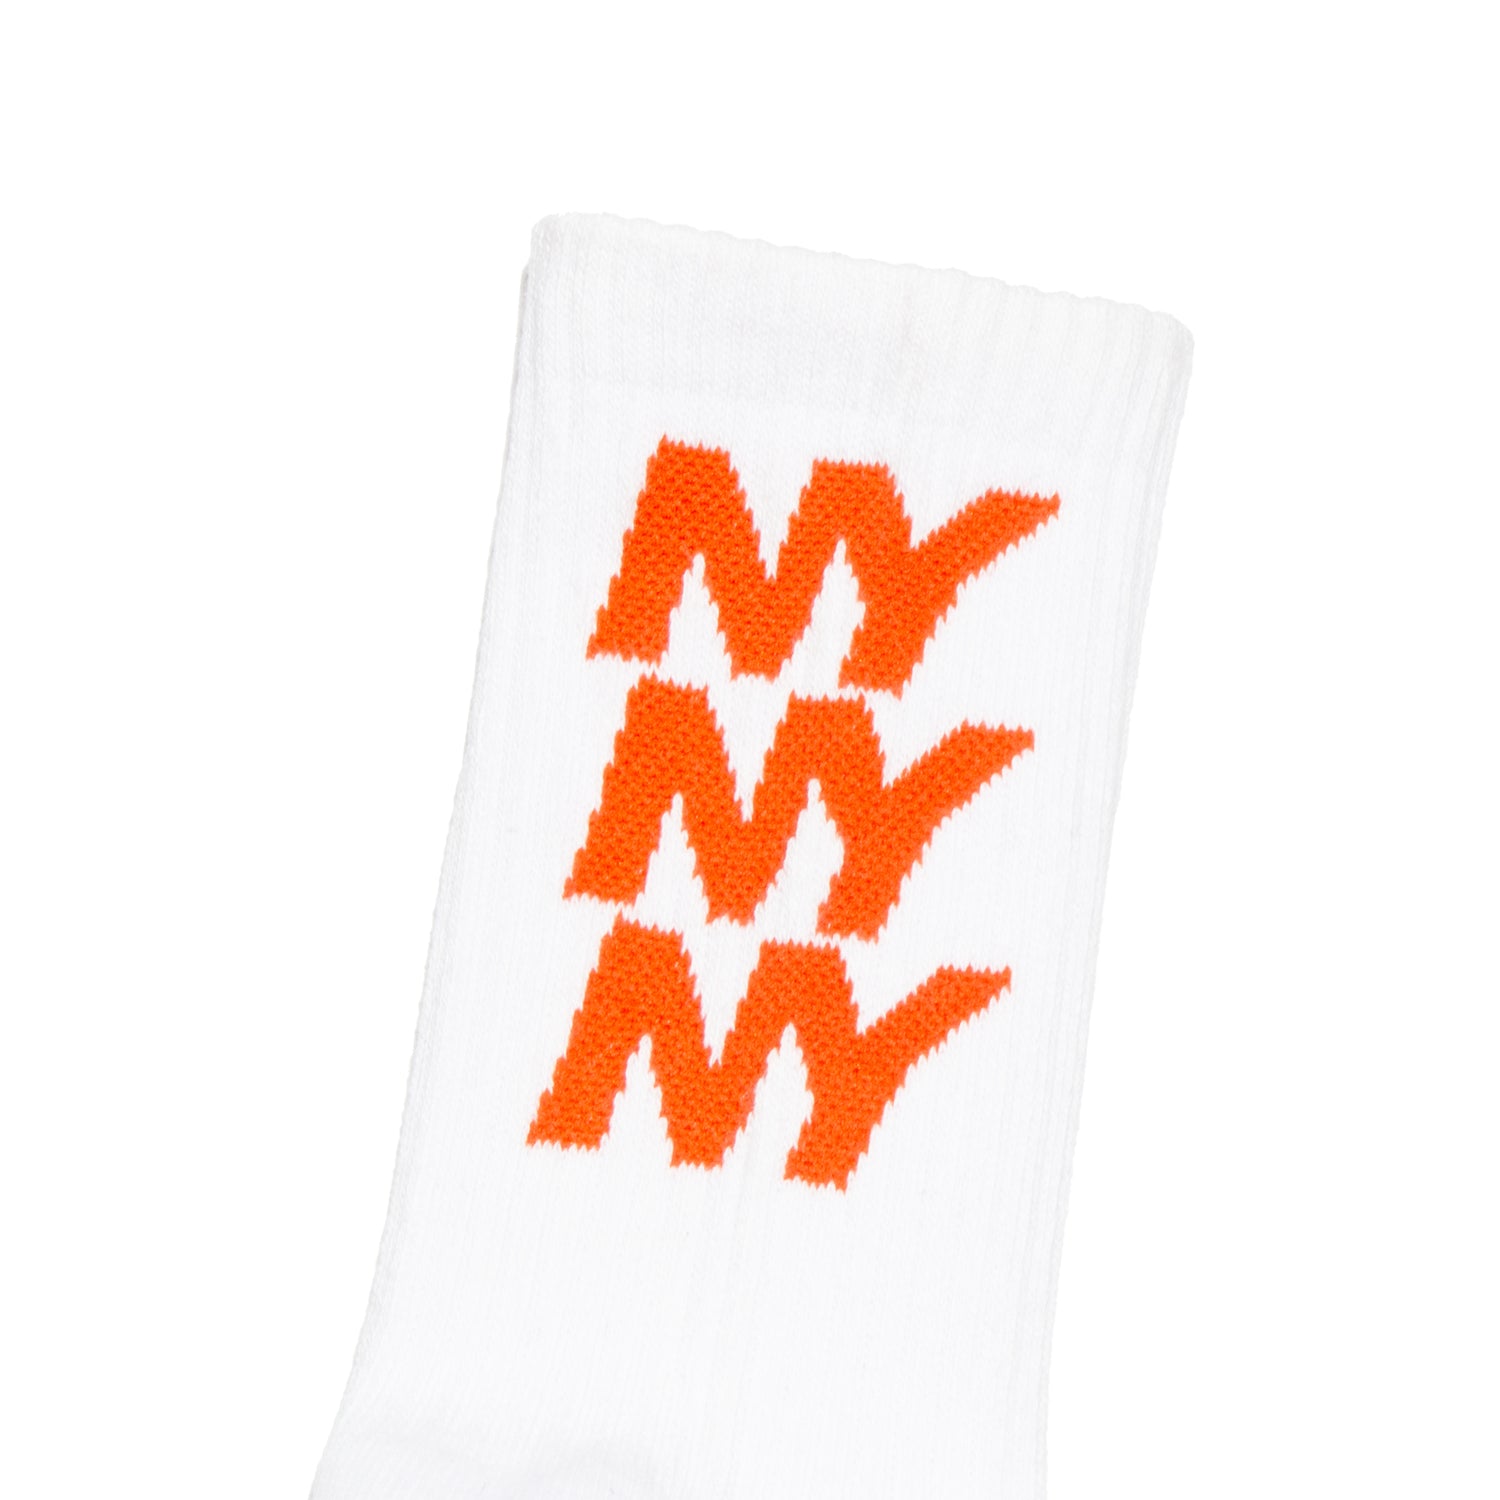 Only NY NY Repeat Crew Sock - White